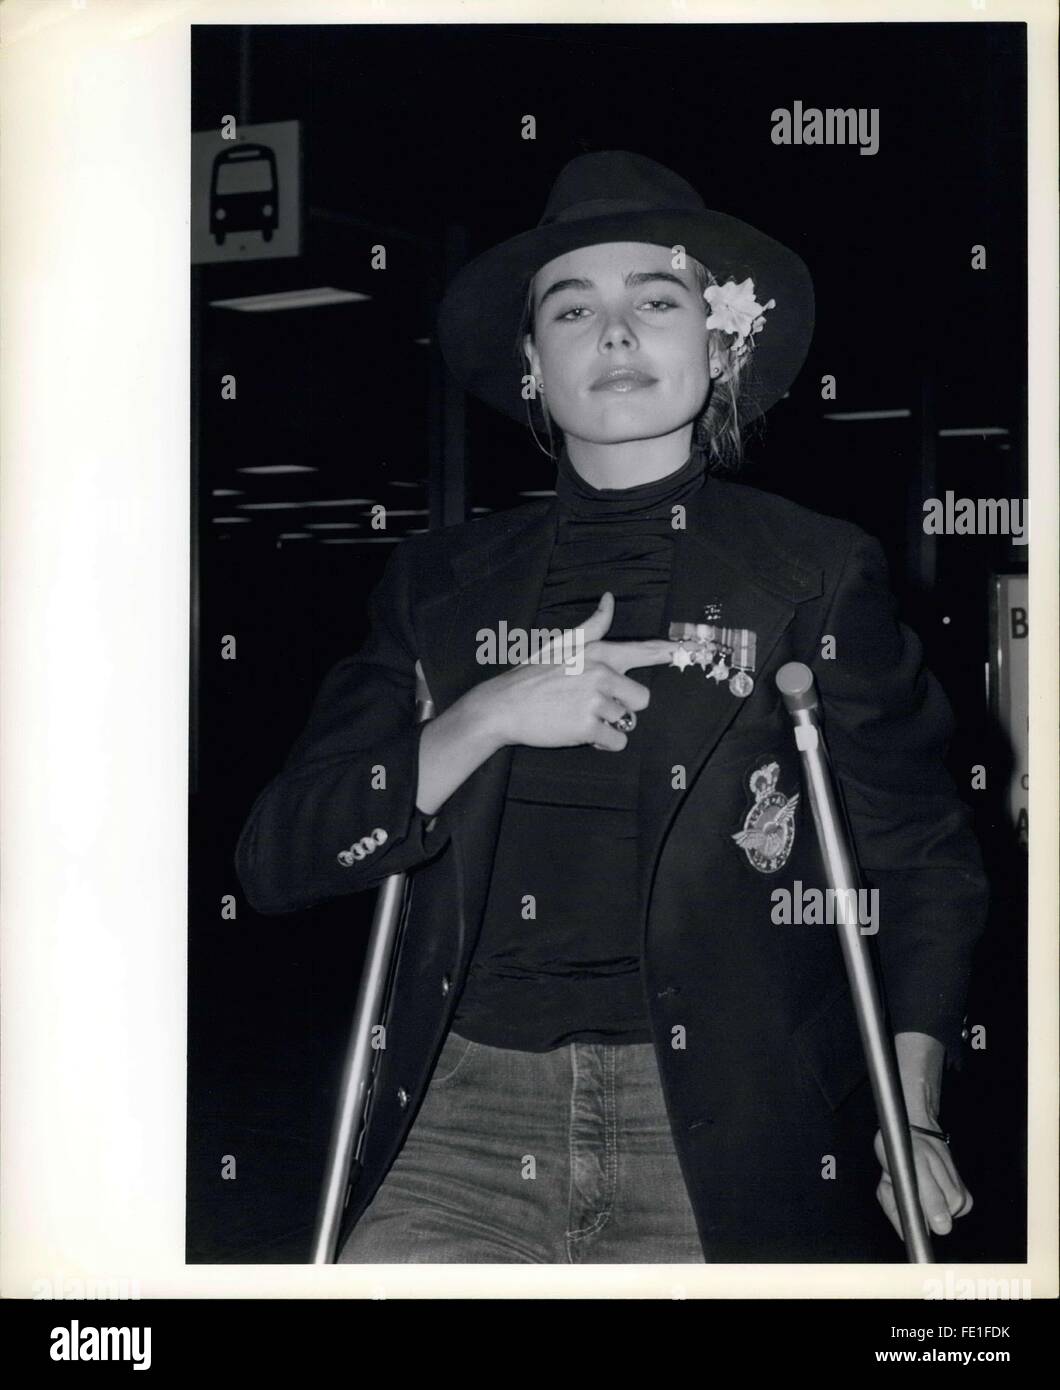 1985 - Margaux Hemingway on crutches © Keystone Pictures USA/ZUMAPRESS.com/Alamy Live News Stock Photo